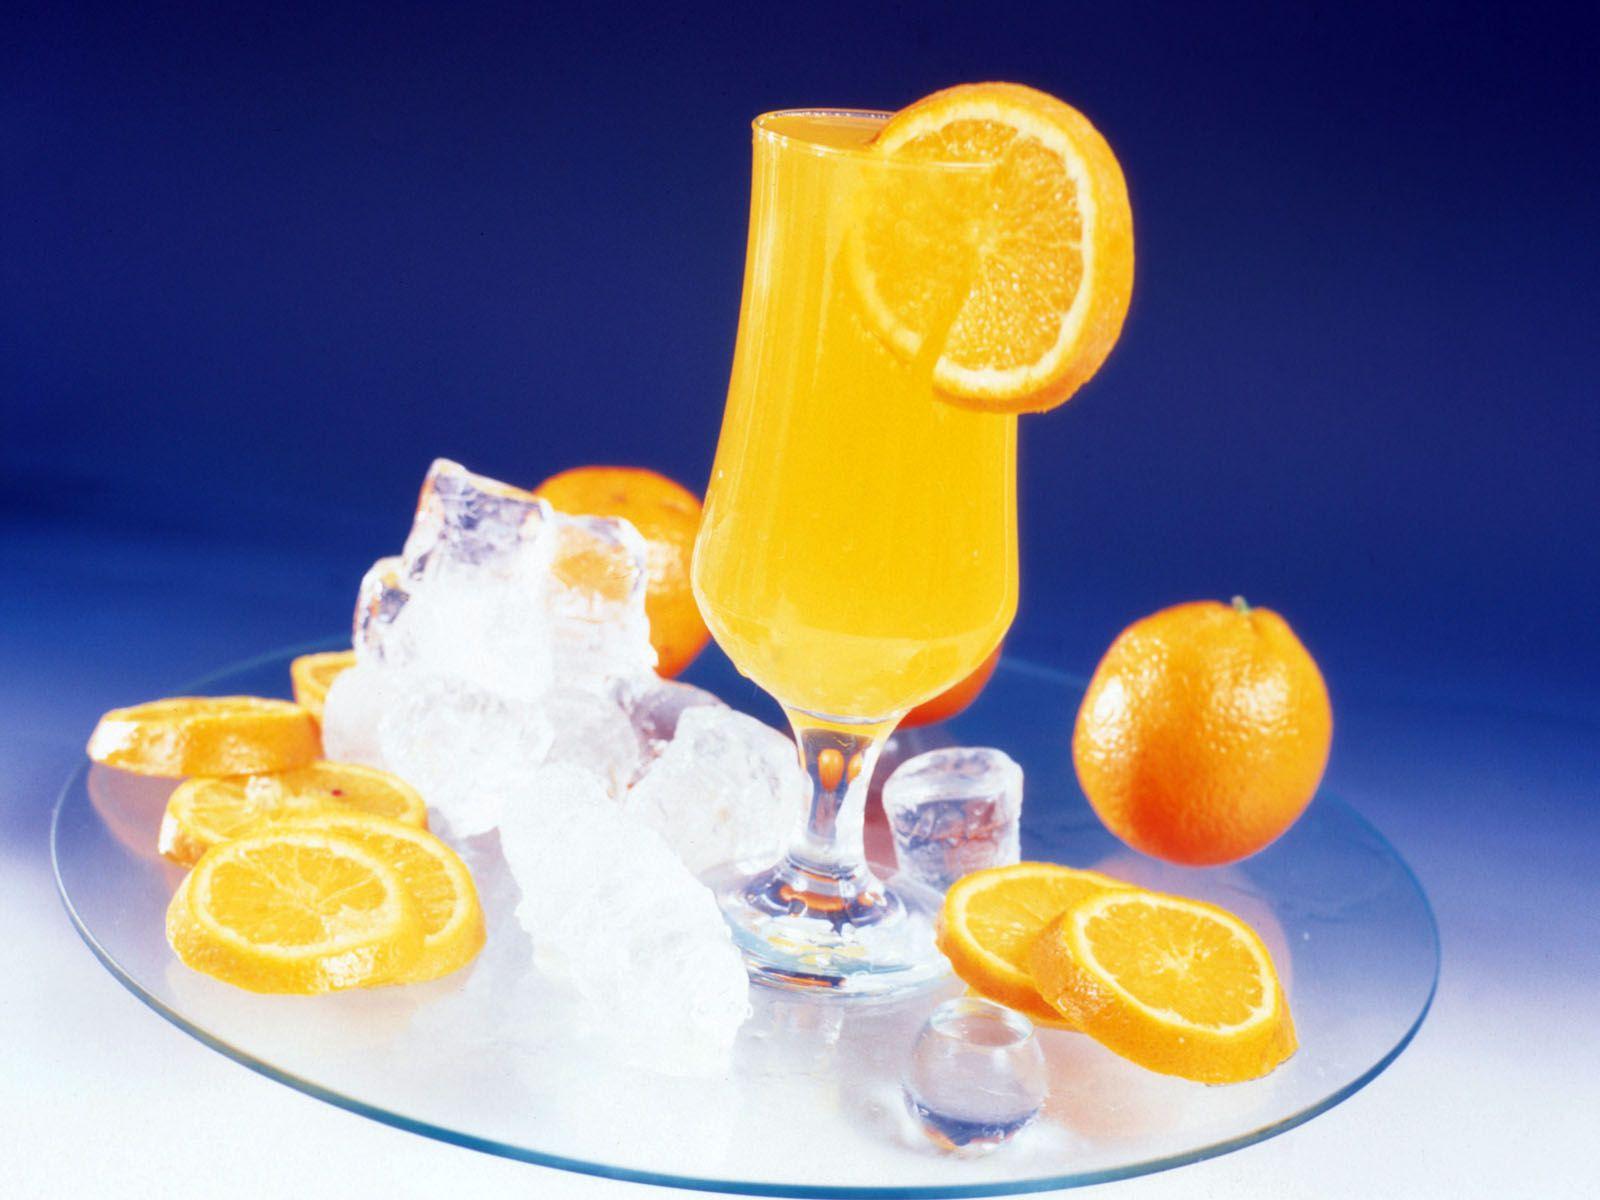 Juice Orange fruit Food Fruit Citrus Drinks